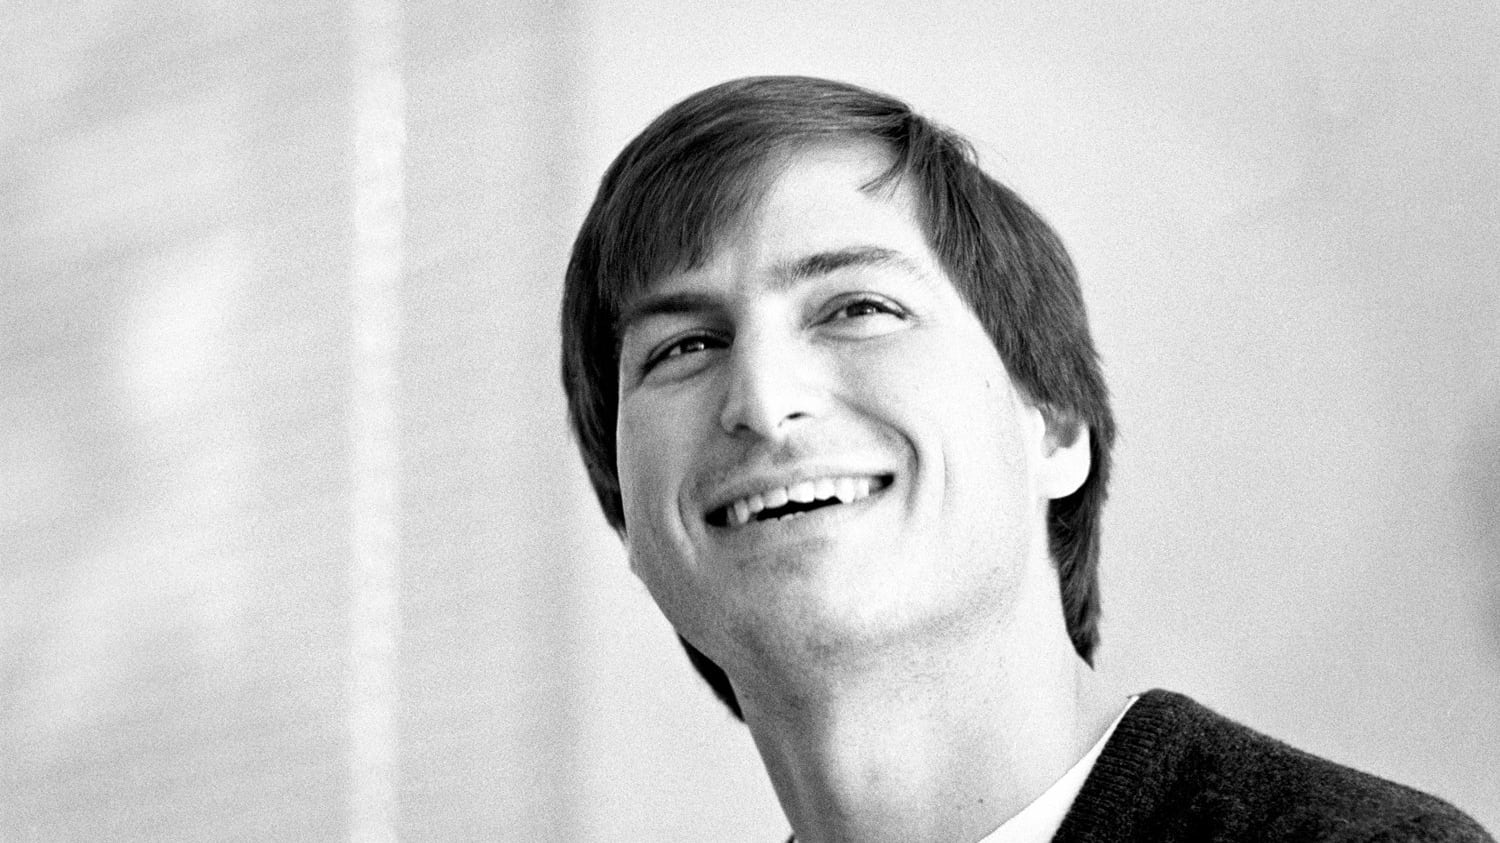 ¿Alguna vez se han imaginado cómo olía Steve Jobs? Su biografía oficial aborda ese tema en su fase de Atari antes de fundar Apple.